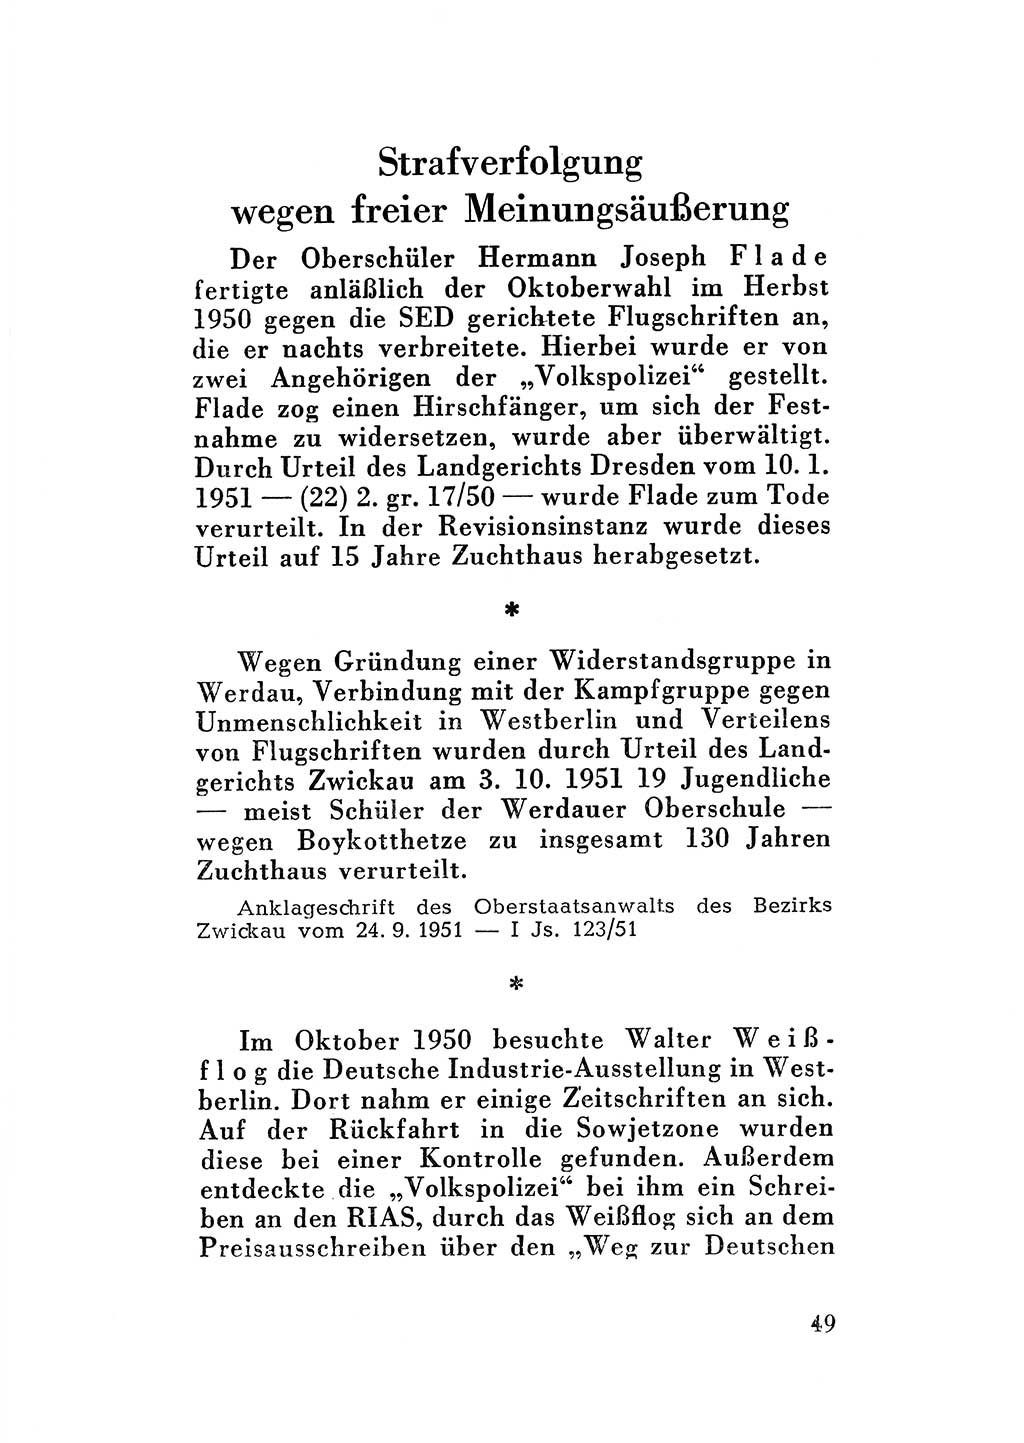 Katalog des Unrechts, Untersuchungsausschuß Freiheitlicher Juristen (UfJ) [Bundesrepublik Deutschland (BRD)] 1956, Seite 49 (Kat. UnR. UfJ BRD 1956, S. 49)